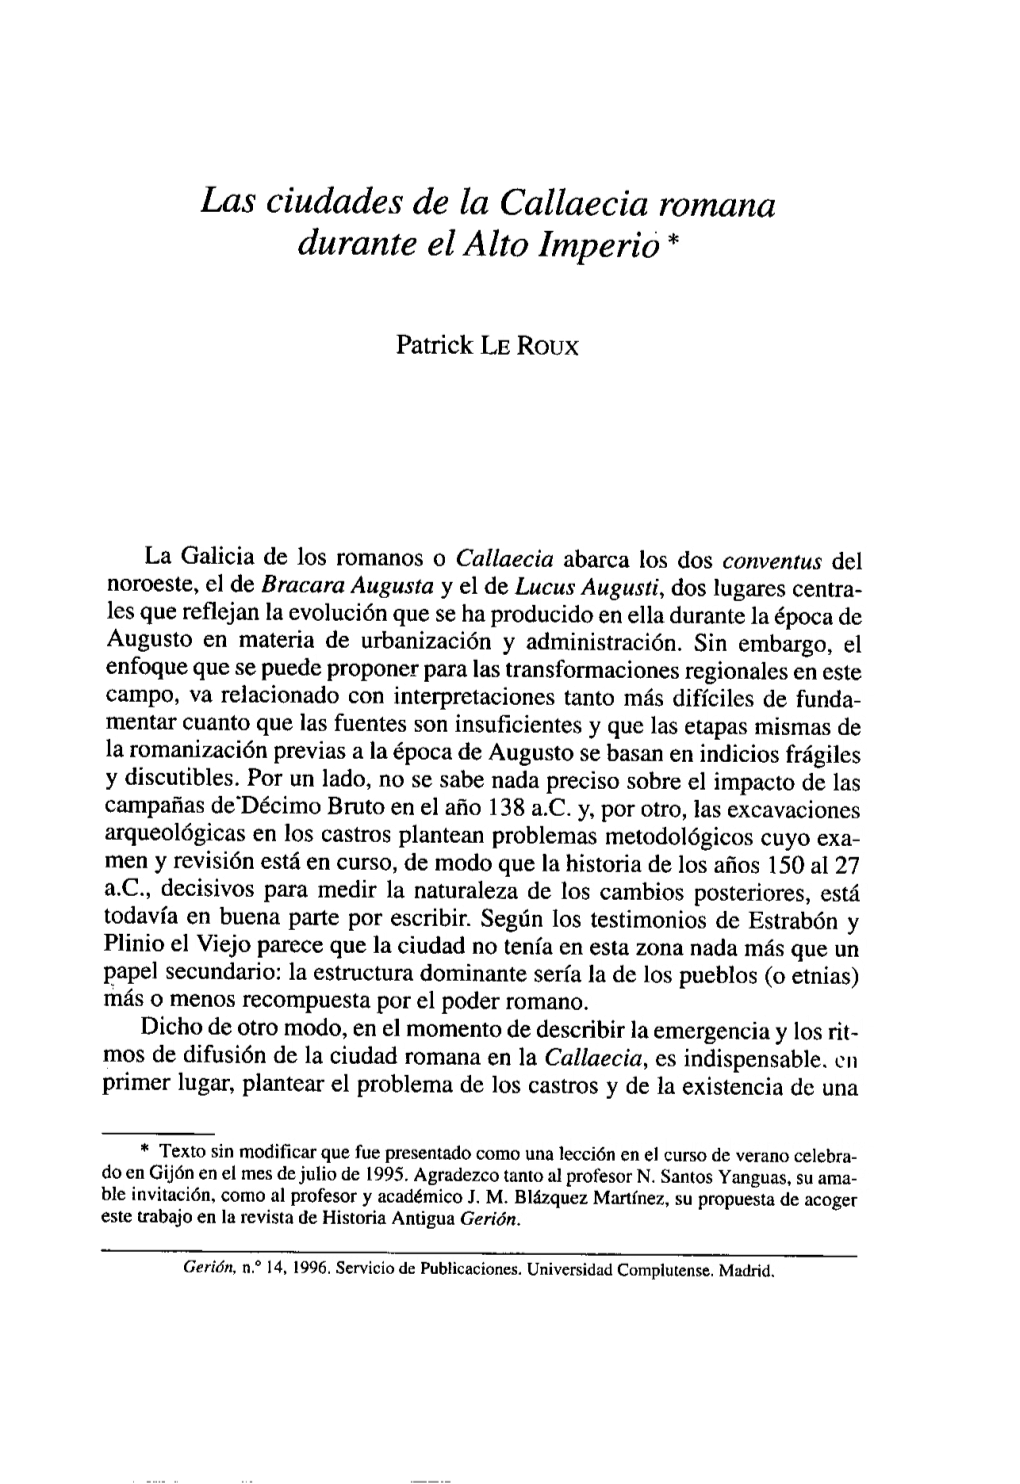 Las Ciudades De La Callaecia Romana Durante El Alto Imperió *